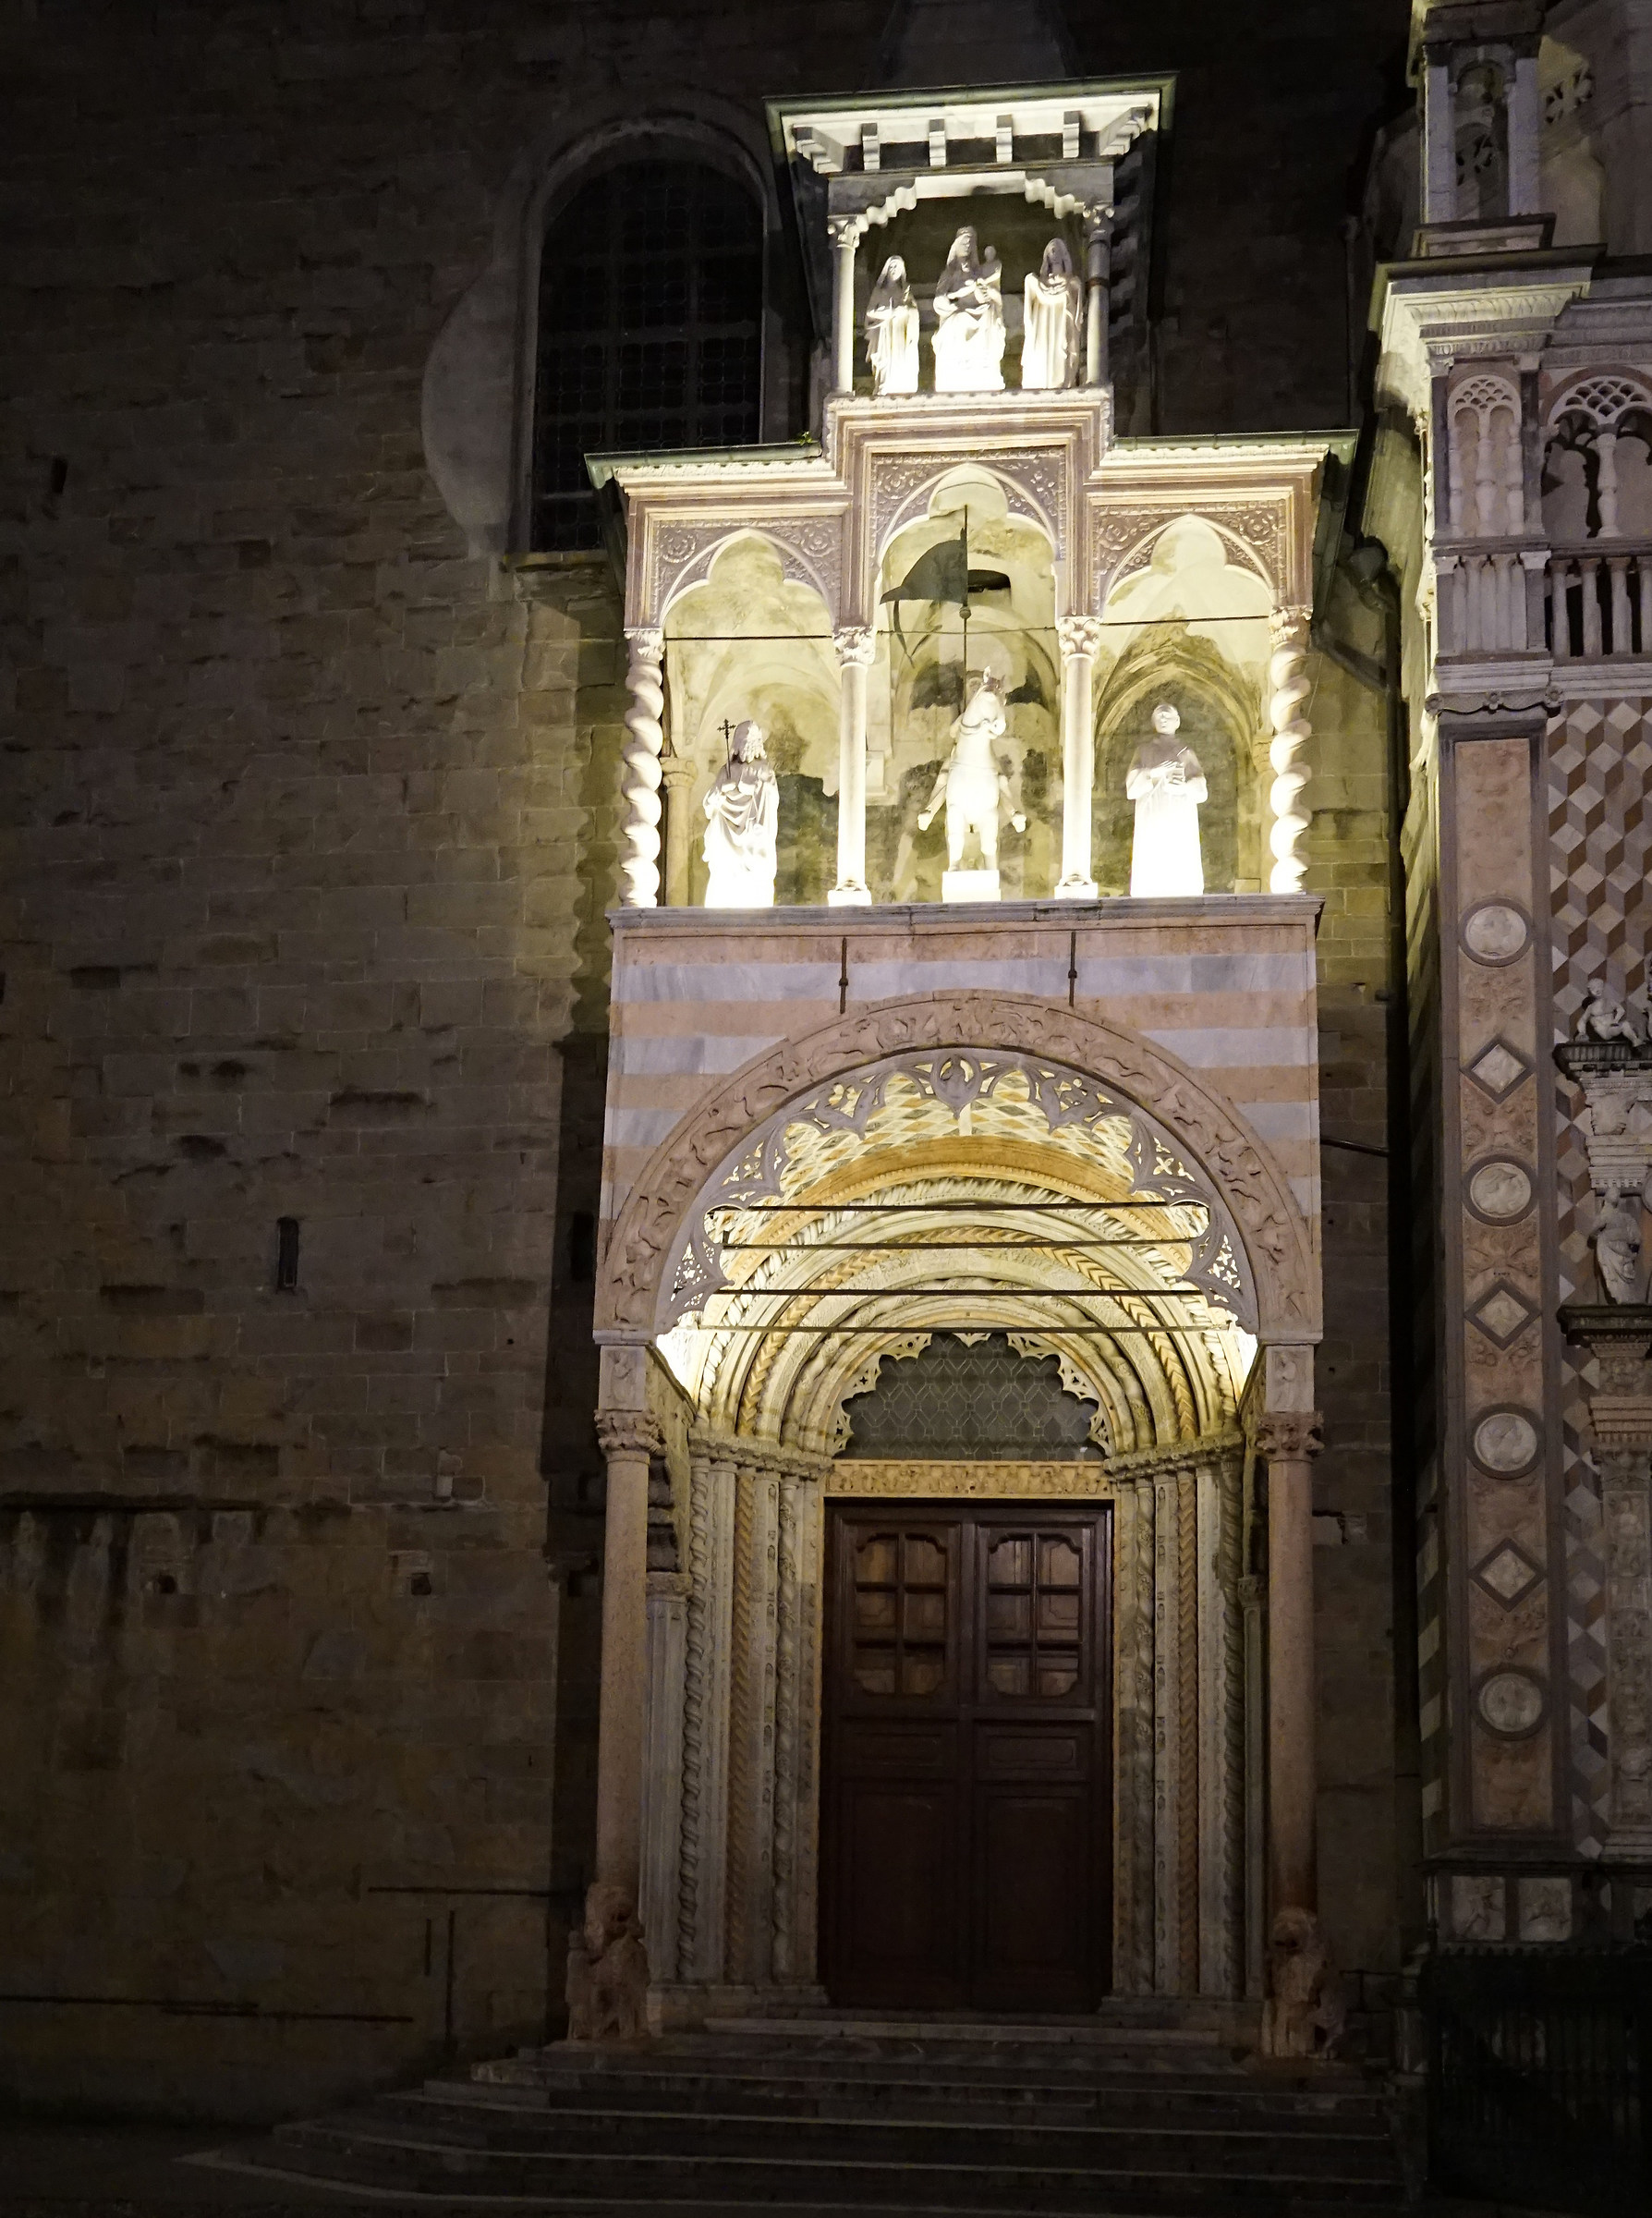 Passeggiata notturna a Bergamo Alta...